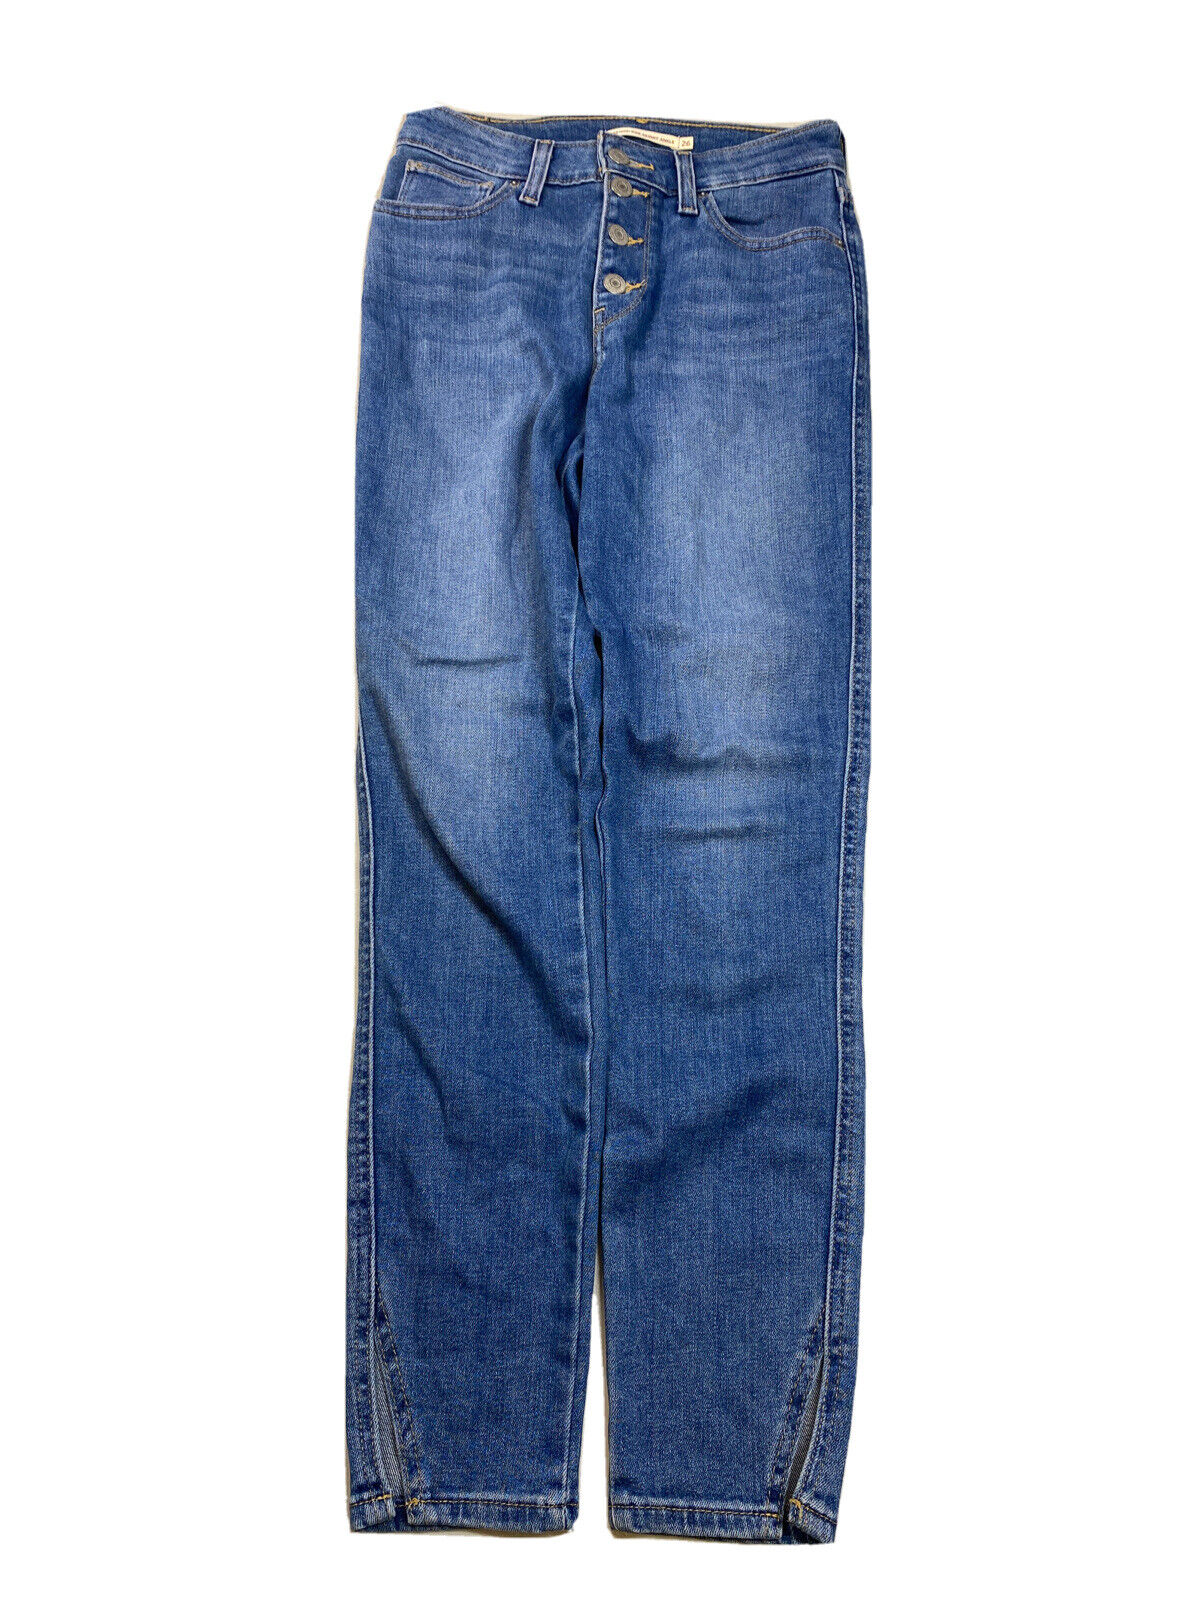 Levis Jeans de mezclilla ajustados al tobillo con lavado claro para mujer -27